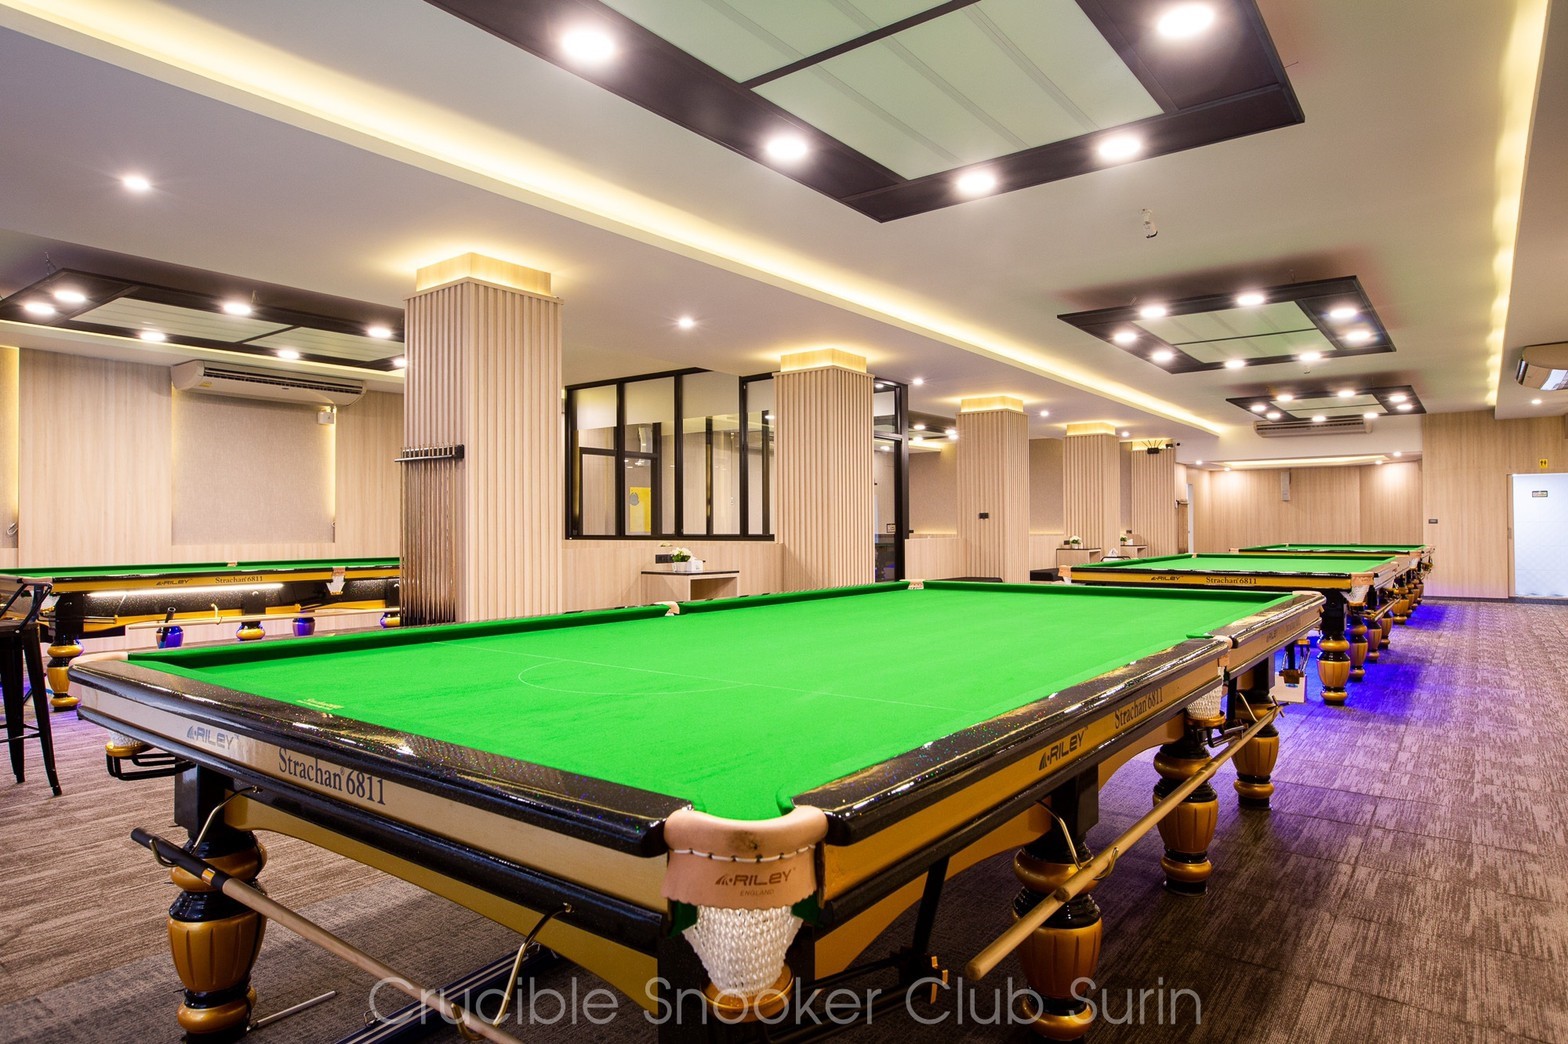 Crucible Snooker Club Surin